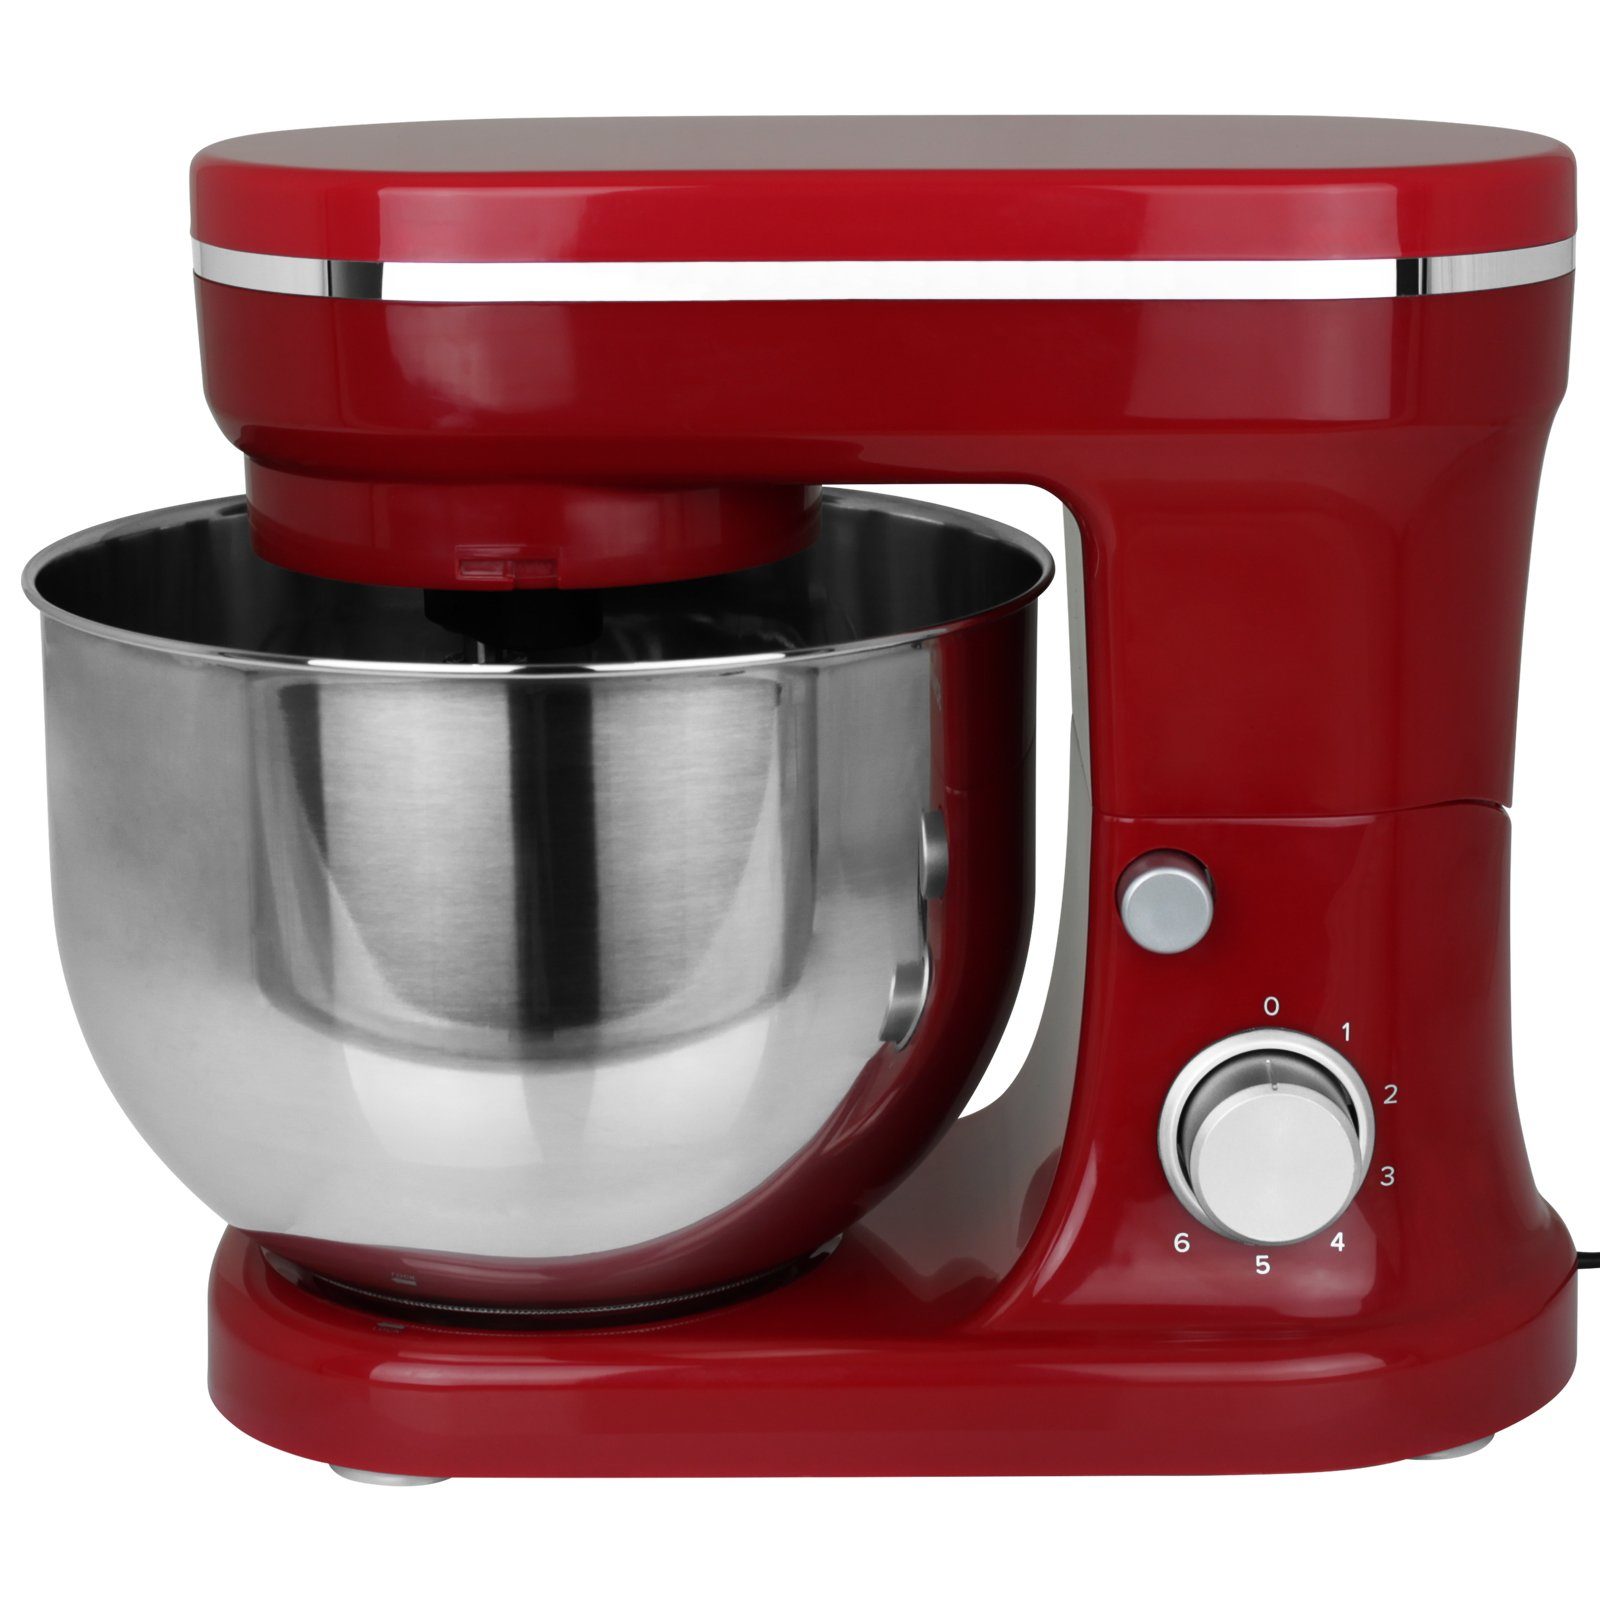 Hatex Küchenmaschine Rührfunktion Teigkneter Mixer W, 1200,00 Rot Rühraufsatz Standmixer 1200W mit Farbwahl